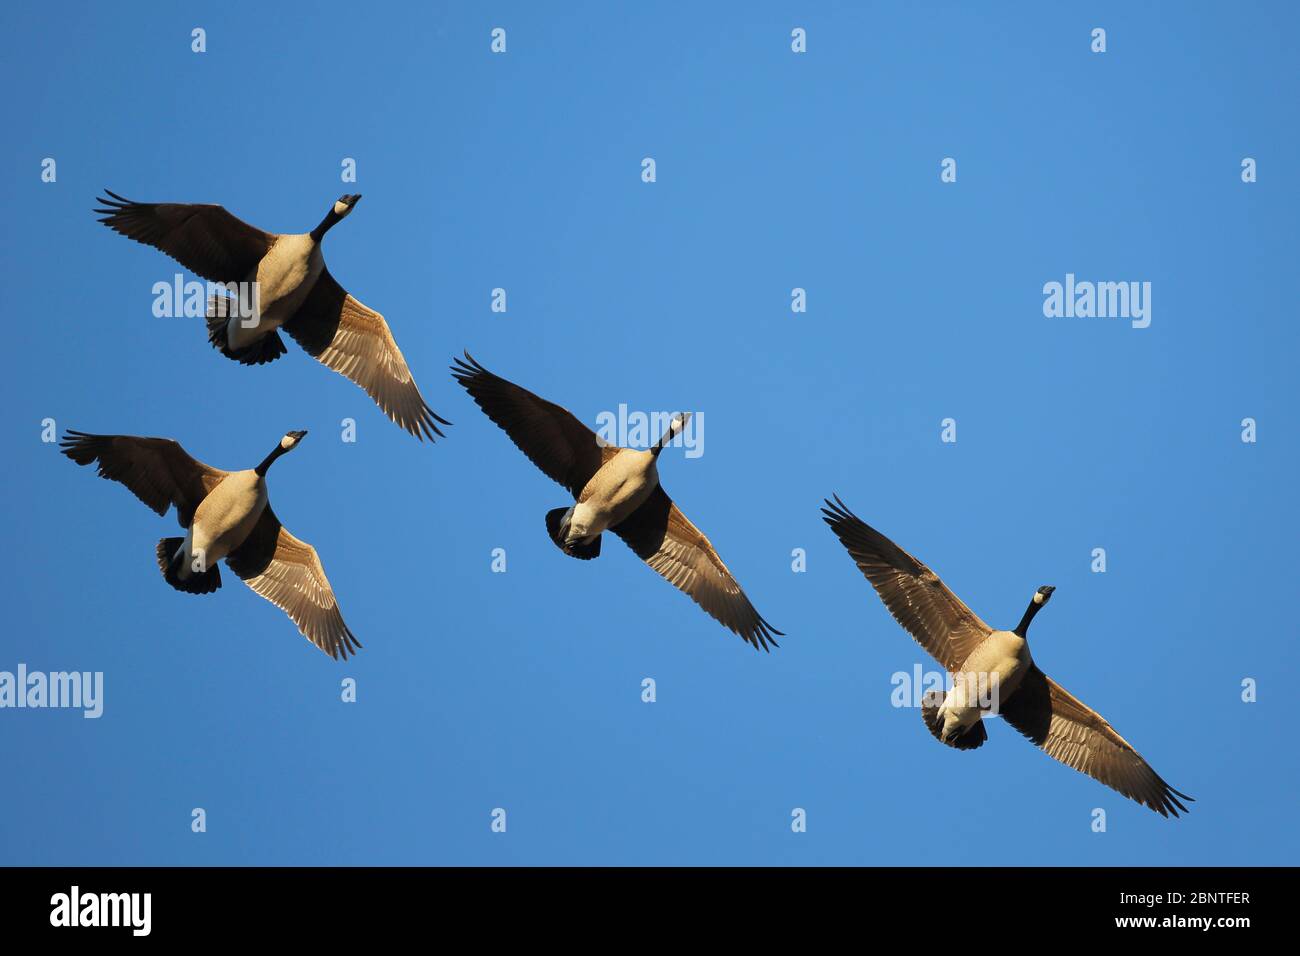 Quatre Bernaches du Canada se dirigent ensemble en vol, le jour du printemps, dans un ciel bleu ensoleillé, vers le nord, sur leur chemin de migration. Banque D'Images